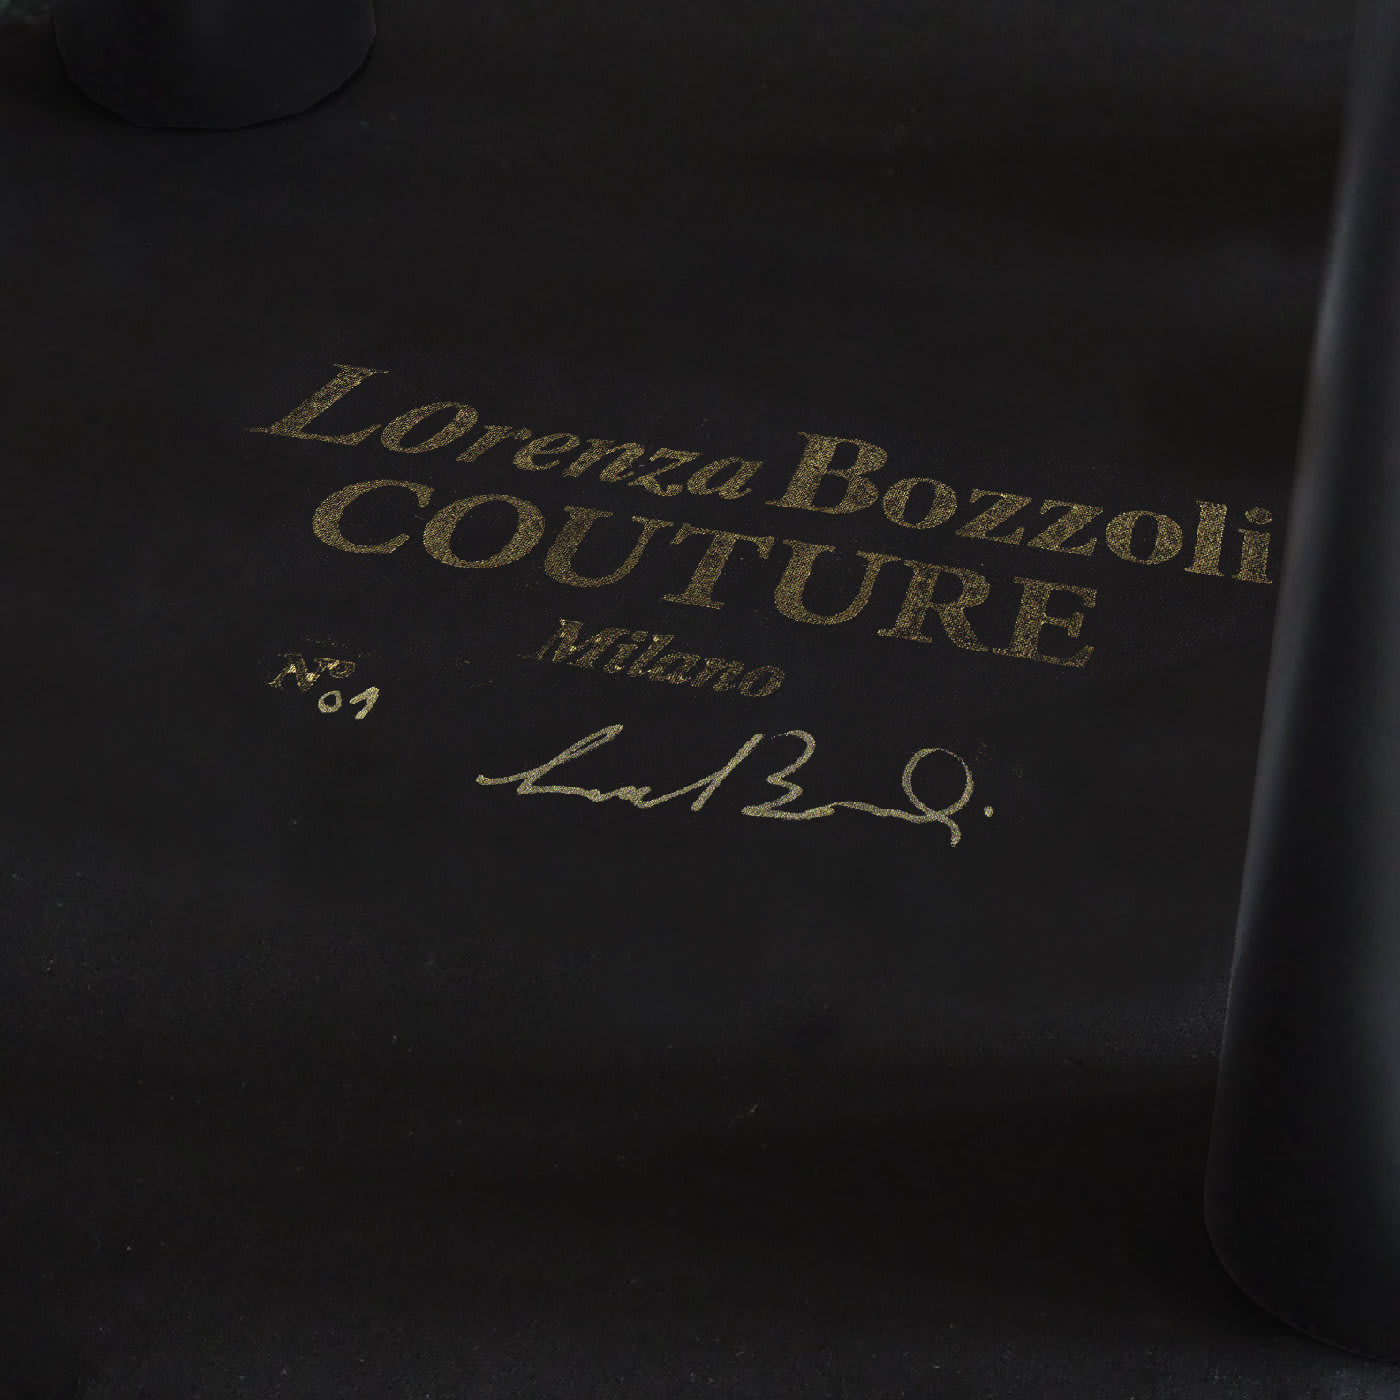 Couture Geometric Gio' Bench - Lorenza Bozzoli Design